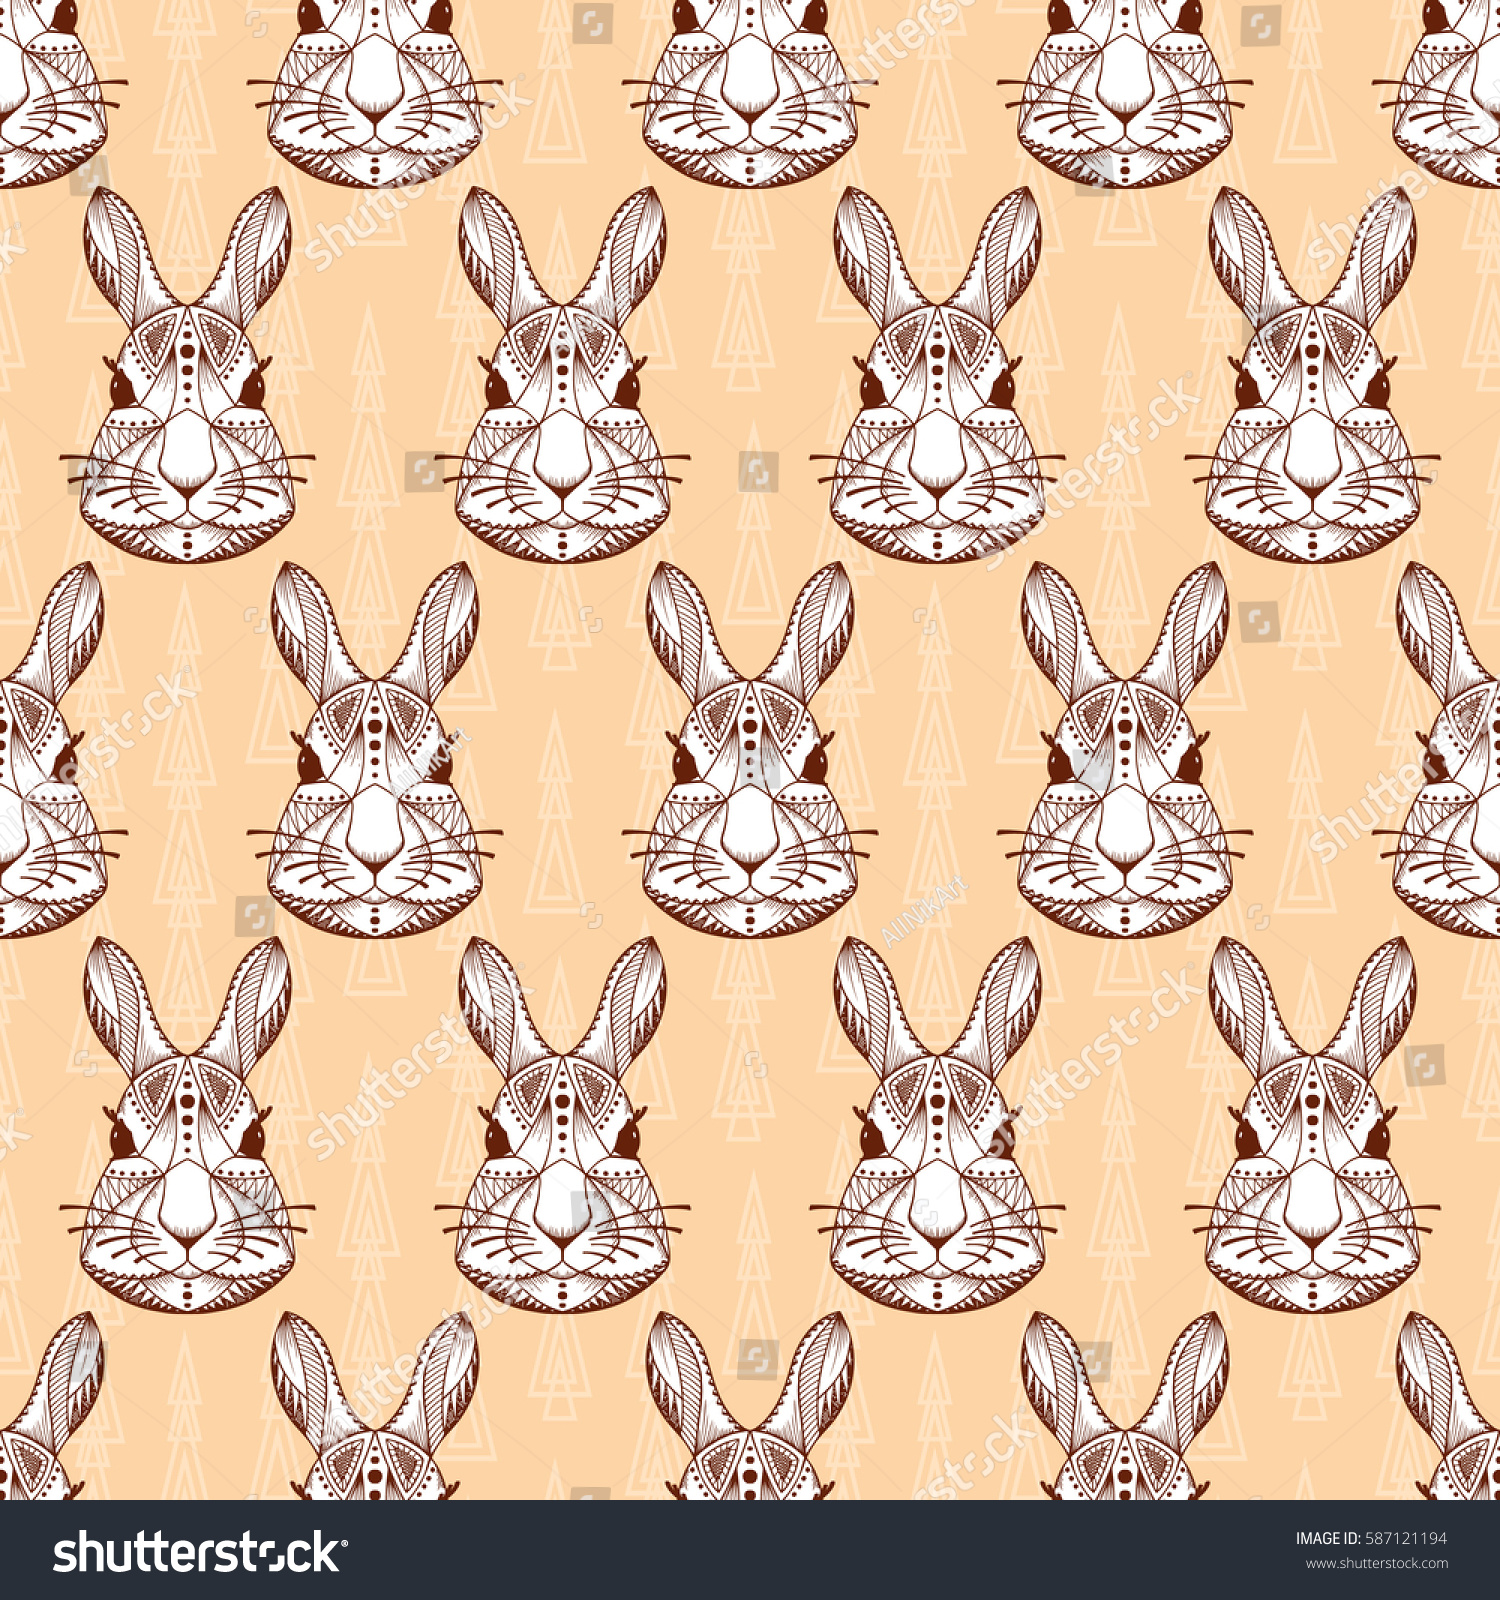 Edit Vectors Free Online - Bunny head. | Shutterstock Editor